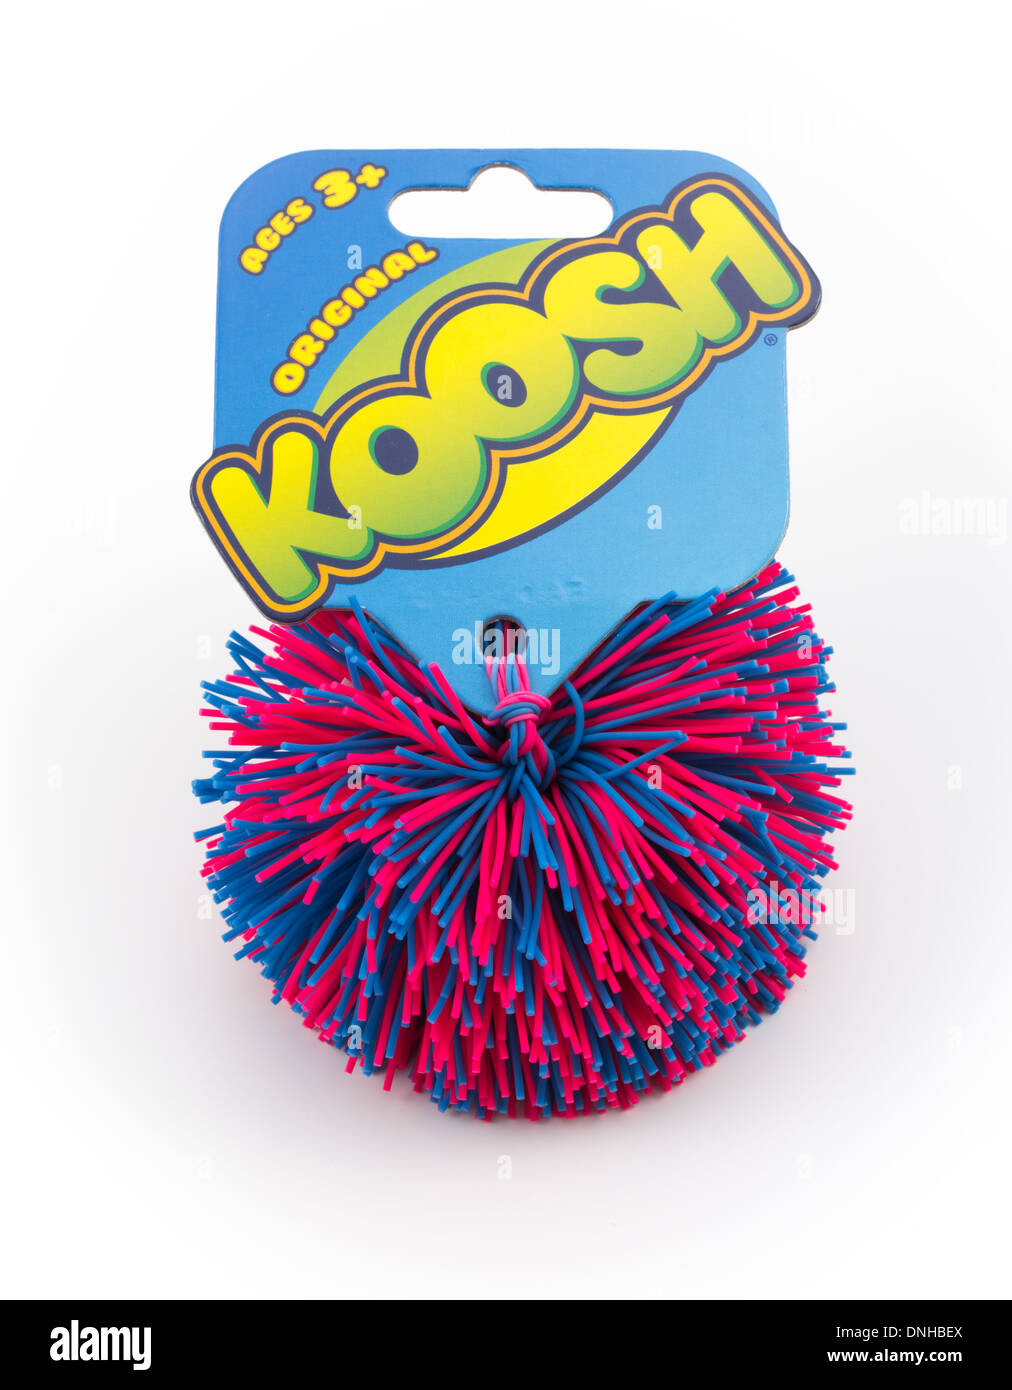 Bola KOOSH, icónico juguete para niños. Foto de stock